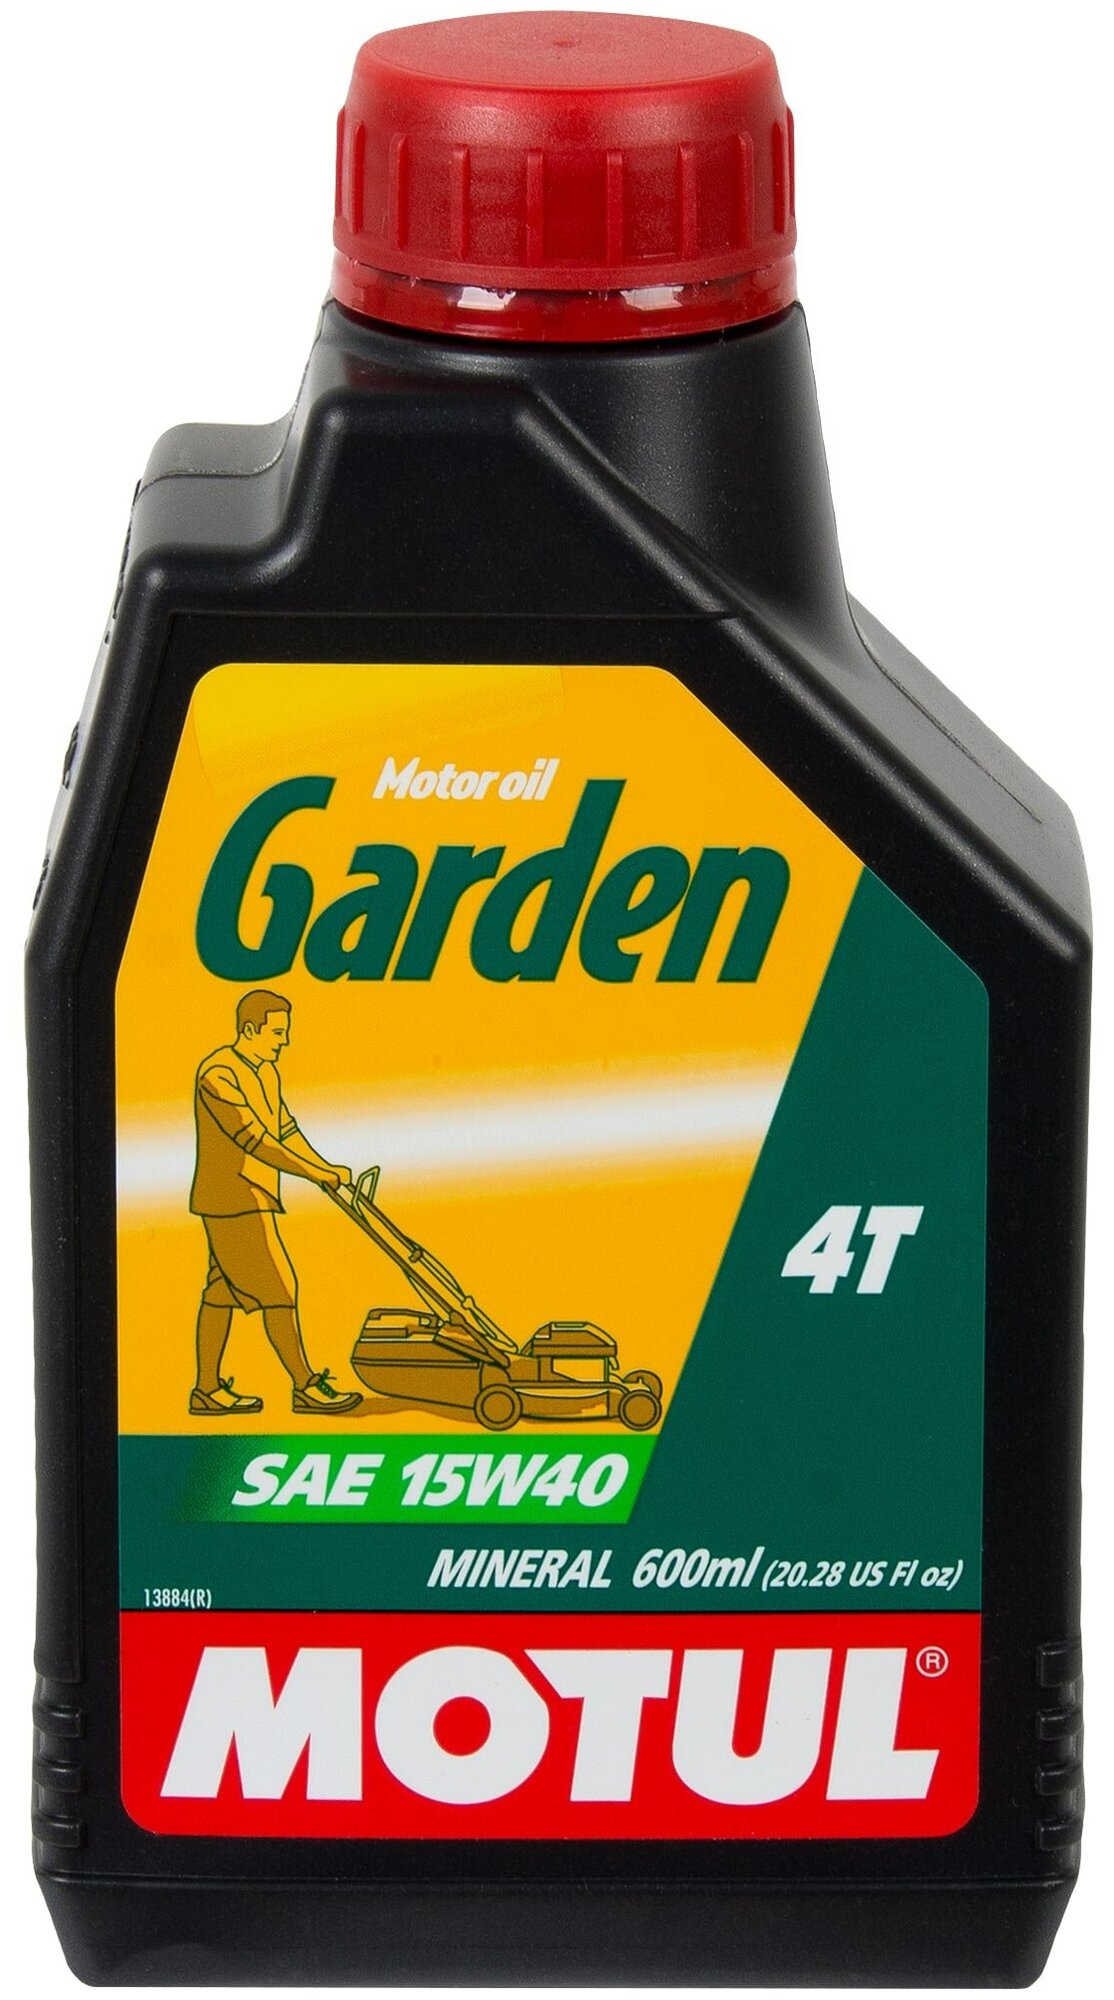 Масло для садовой техники Motul Garden 4T 15W40